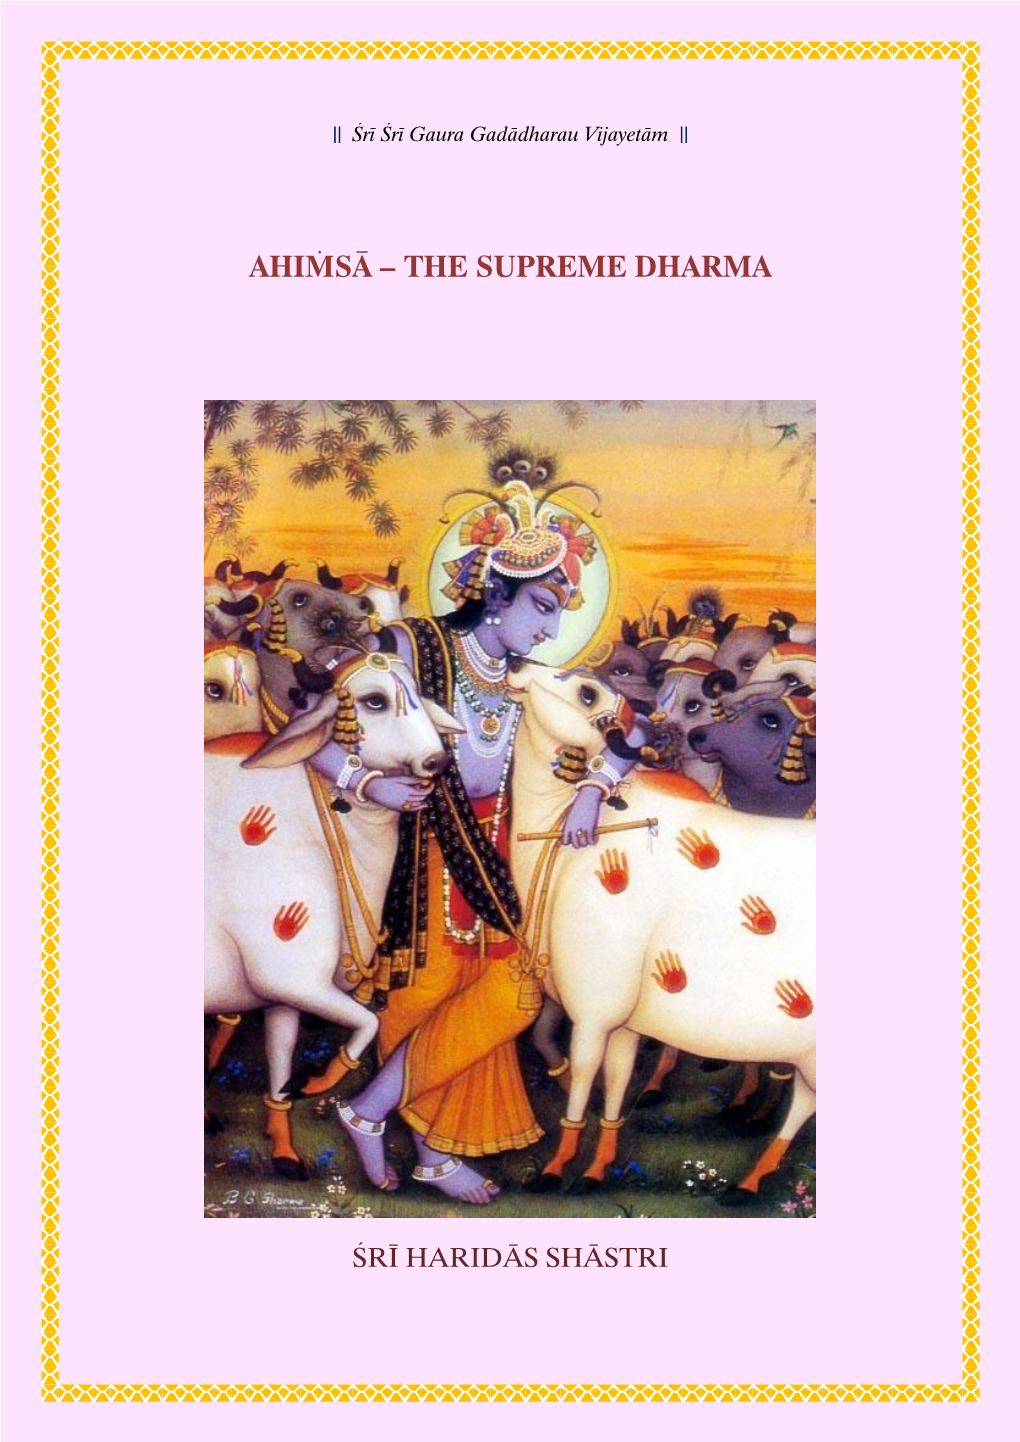 The Supreme Dharma